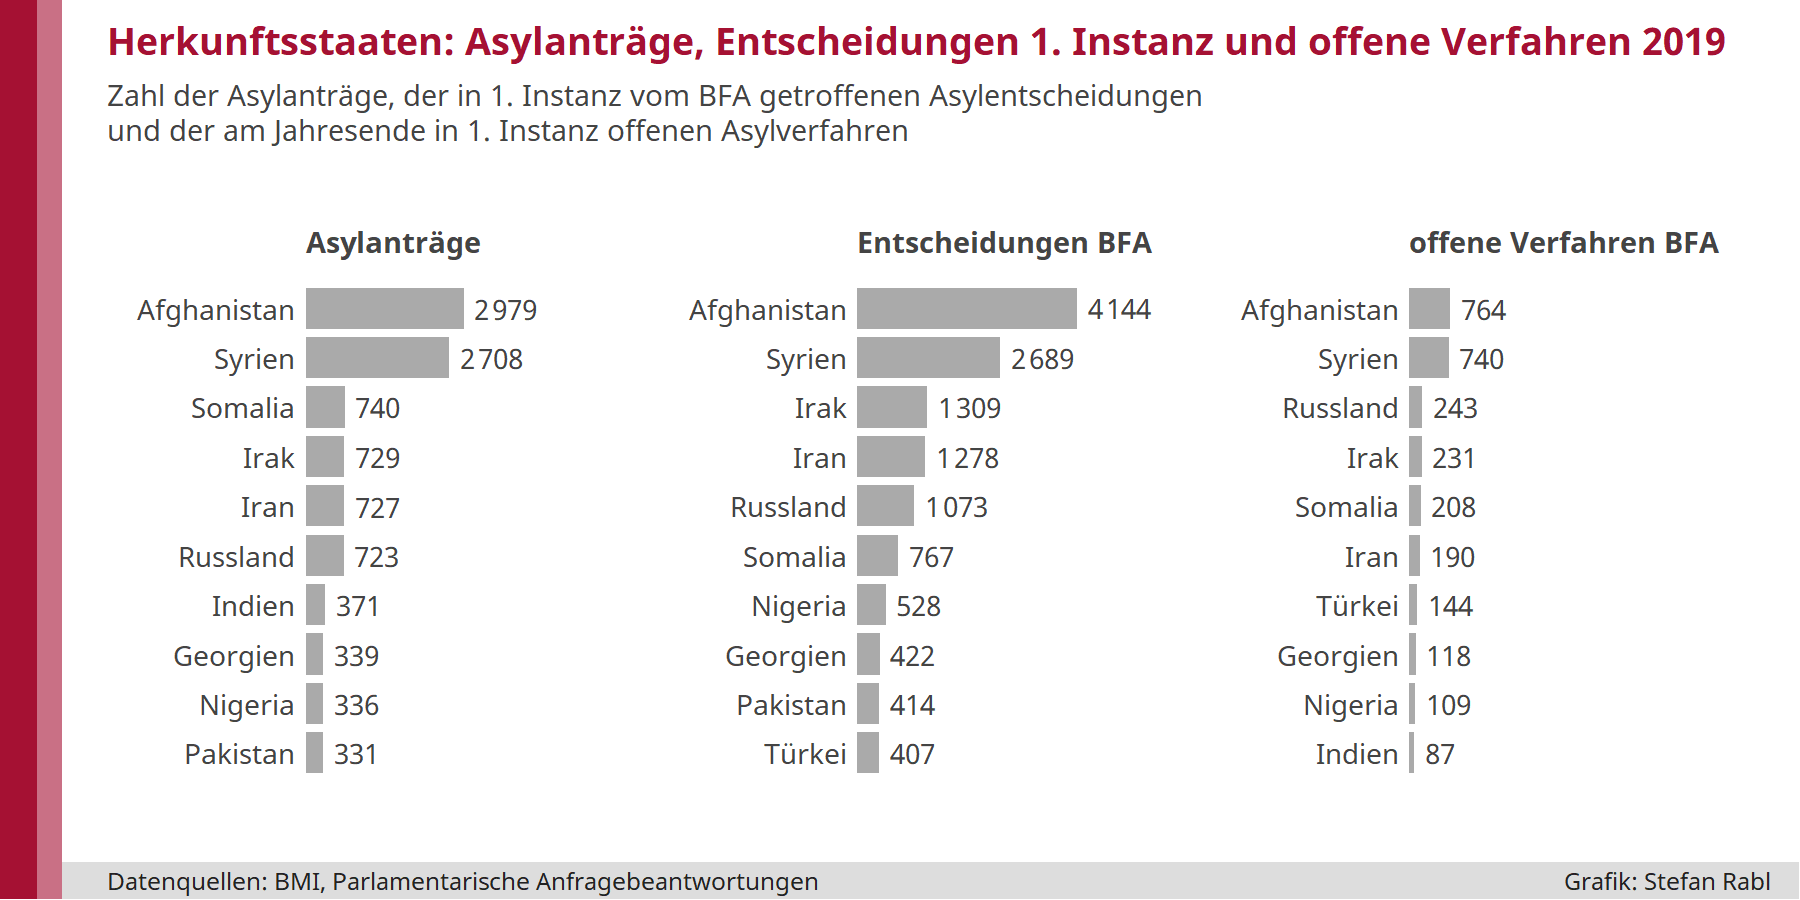 Grafik: Zahlen der Asylanträge, der Entscheidungen in erster Instanz und der offenen Verfahren 2019